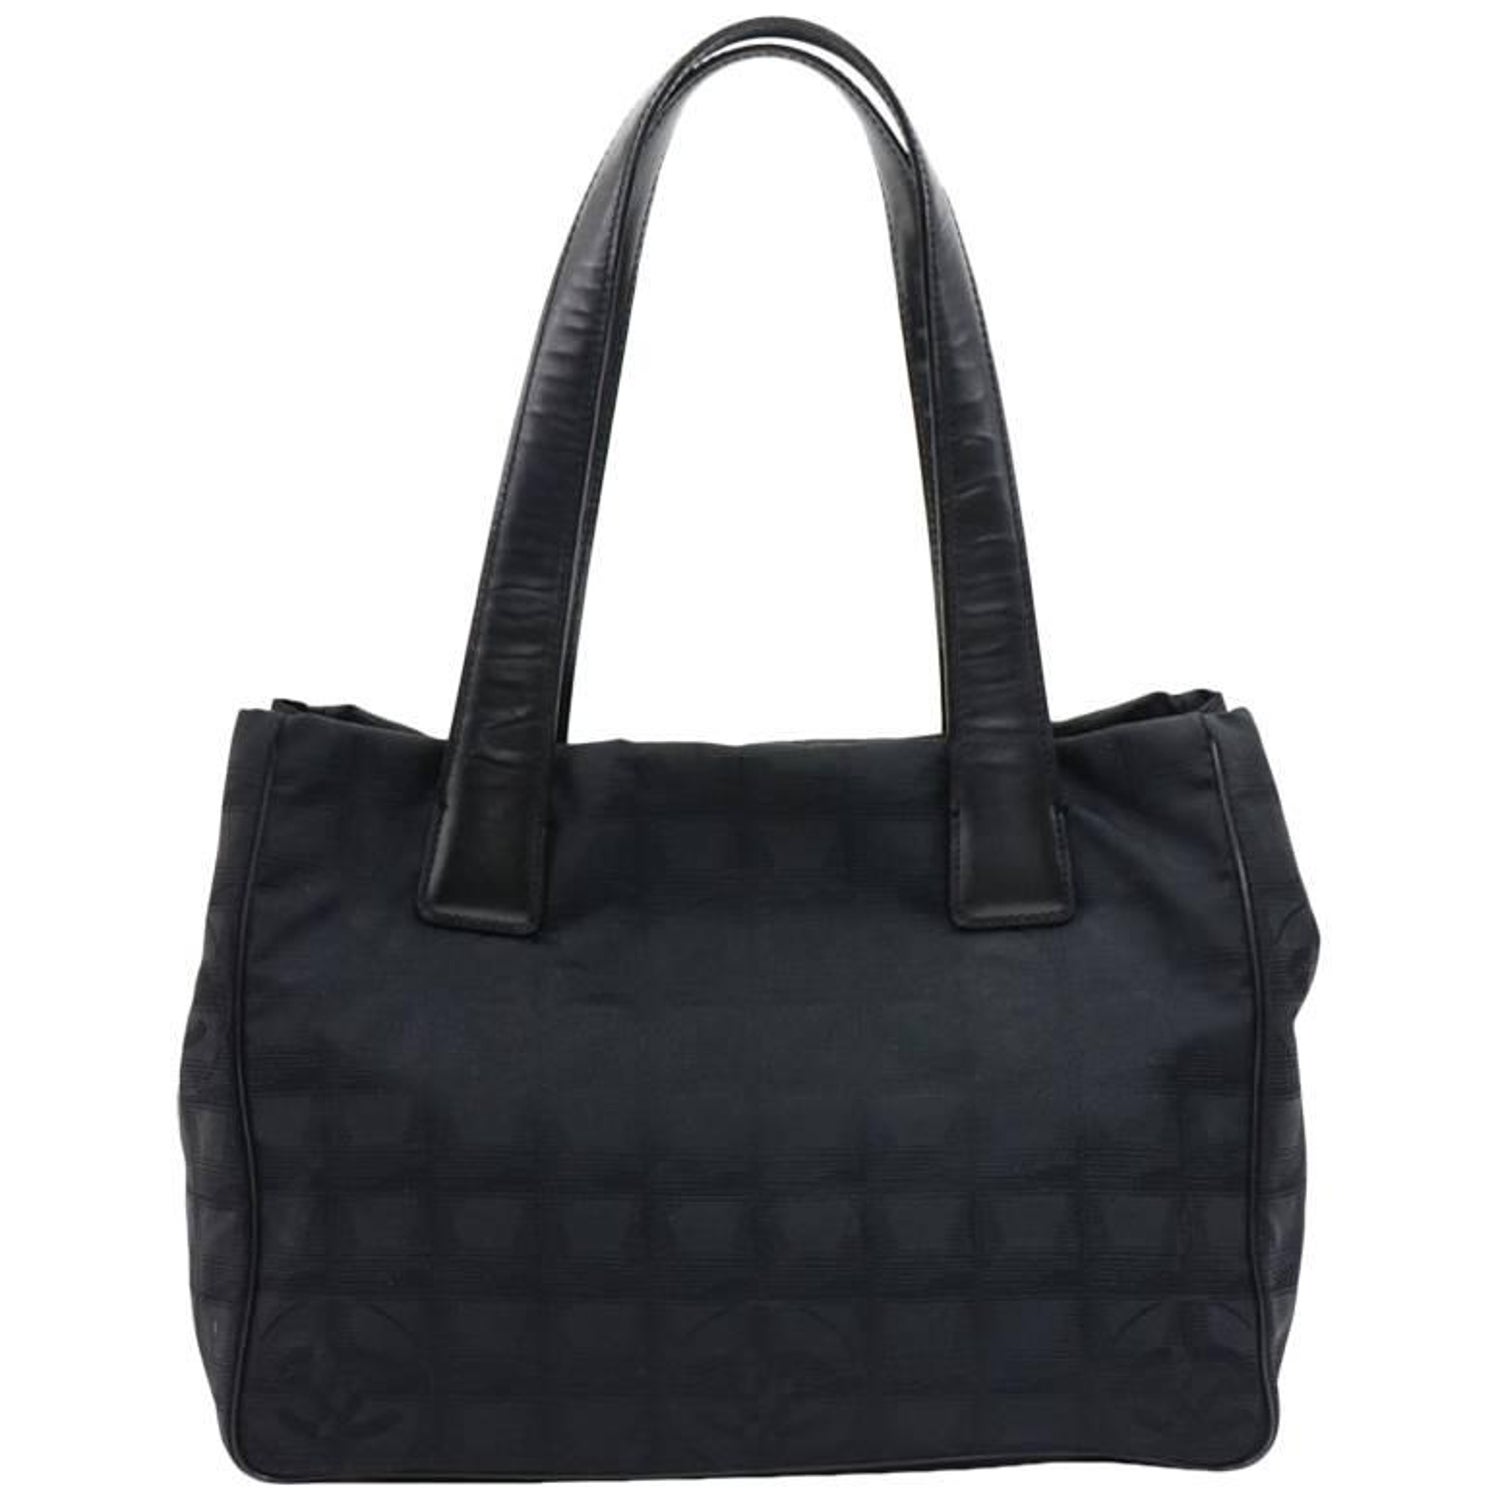 Chanel Medium Travel Ligne Tote - Black Totes, Handbags - CHA891418